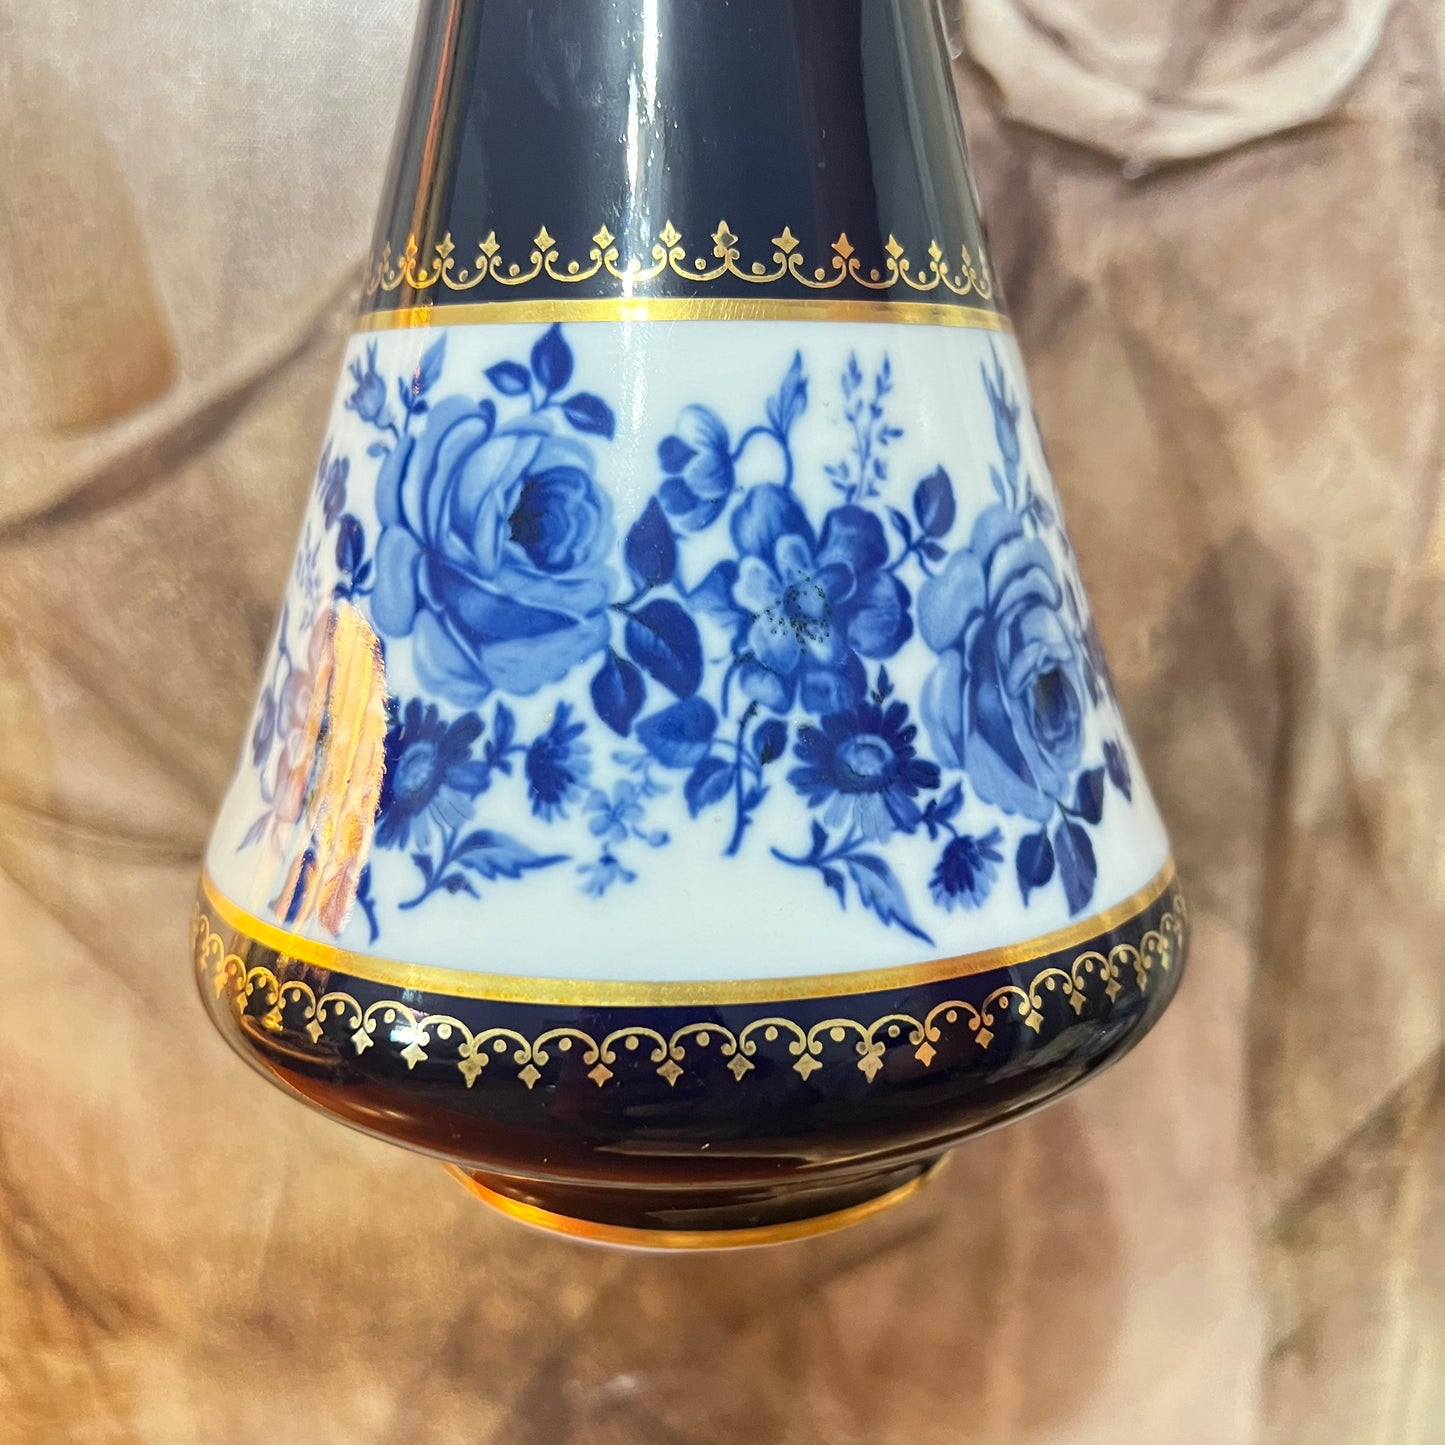 Royal Bavaria Porcelain Cobalt Blue Gilded with Floral Details